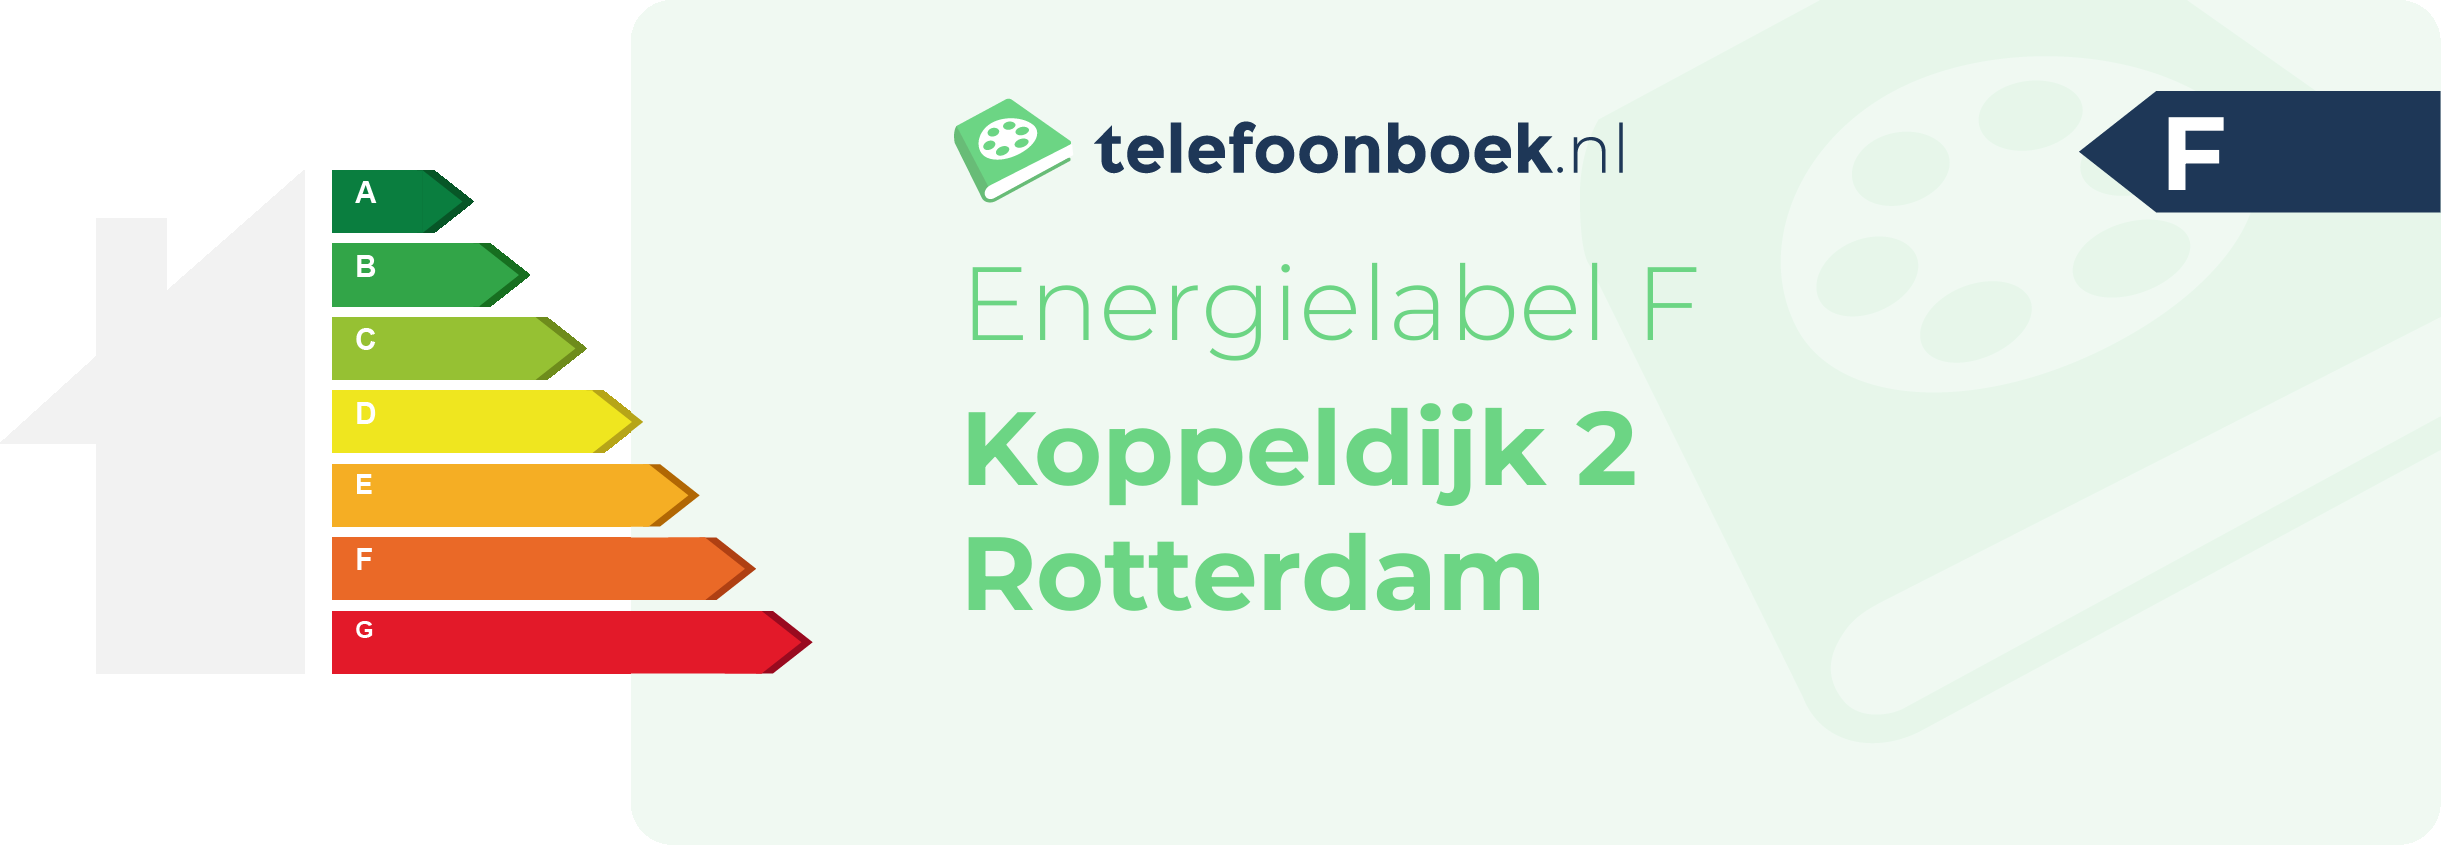 Energielabel Koppeldijk 2 Rotterdam